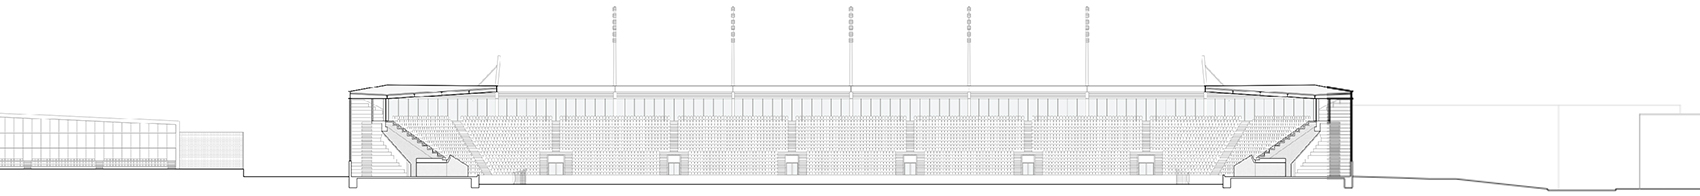 洛桑市新足球场馆，瑞士/散发宁静感的市郊体育设施-61